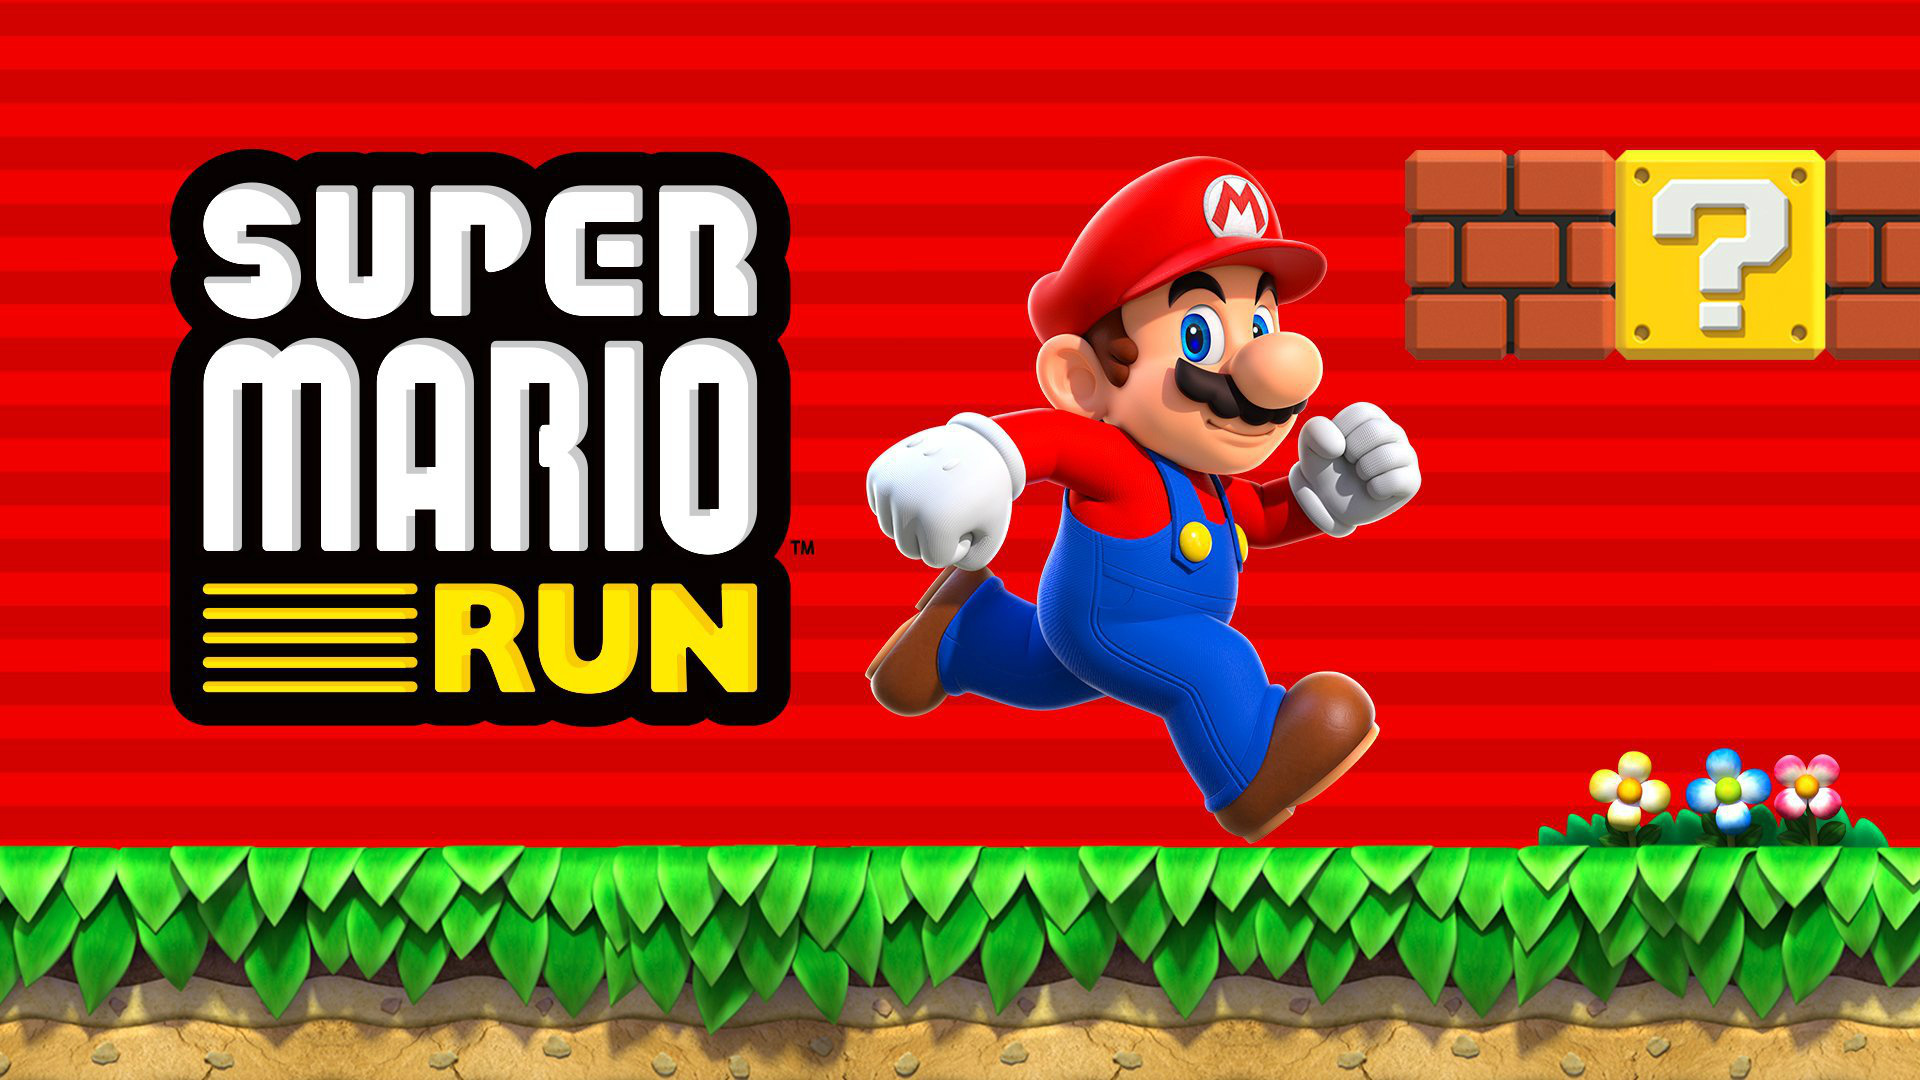 Vírus se disfarça de "Super Mario Run" para infectar celulares Android